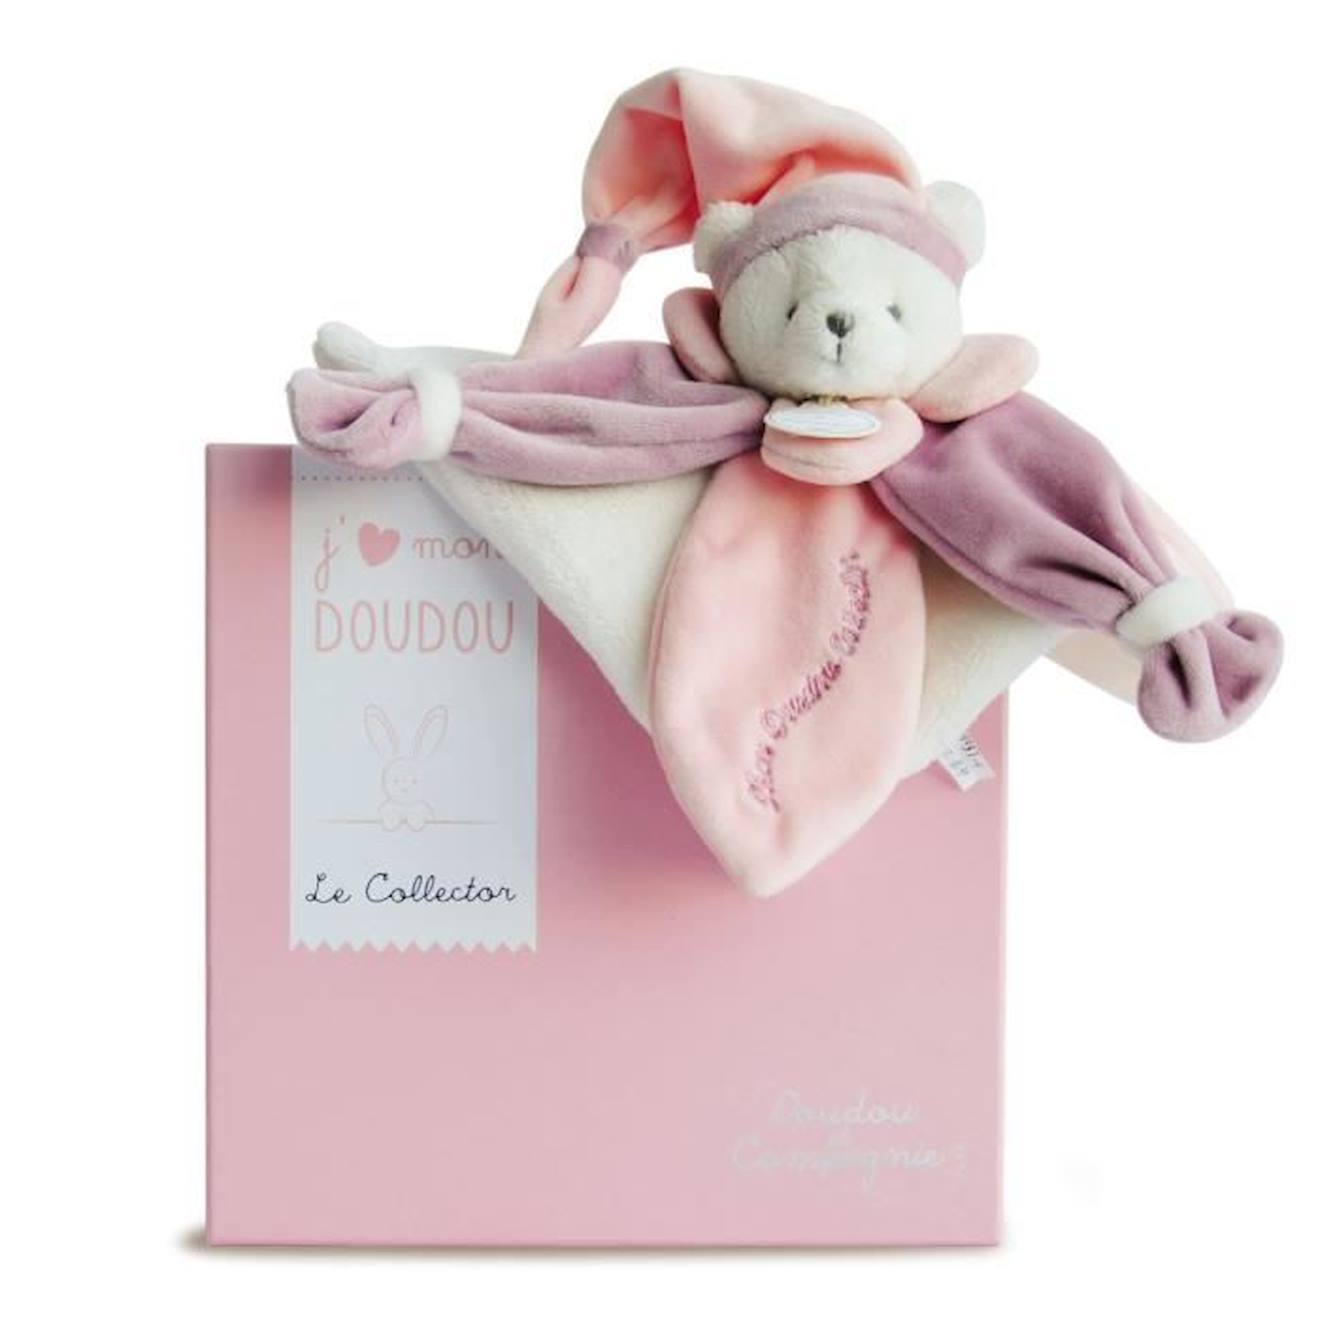 https://media.vertbaudet.fr/Pictures/vertbaudet/339455/doudou-ours-rose-collector-doudou-et-compagnie-24cm-rose-fille-bebe.jpg